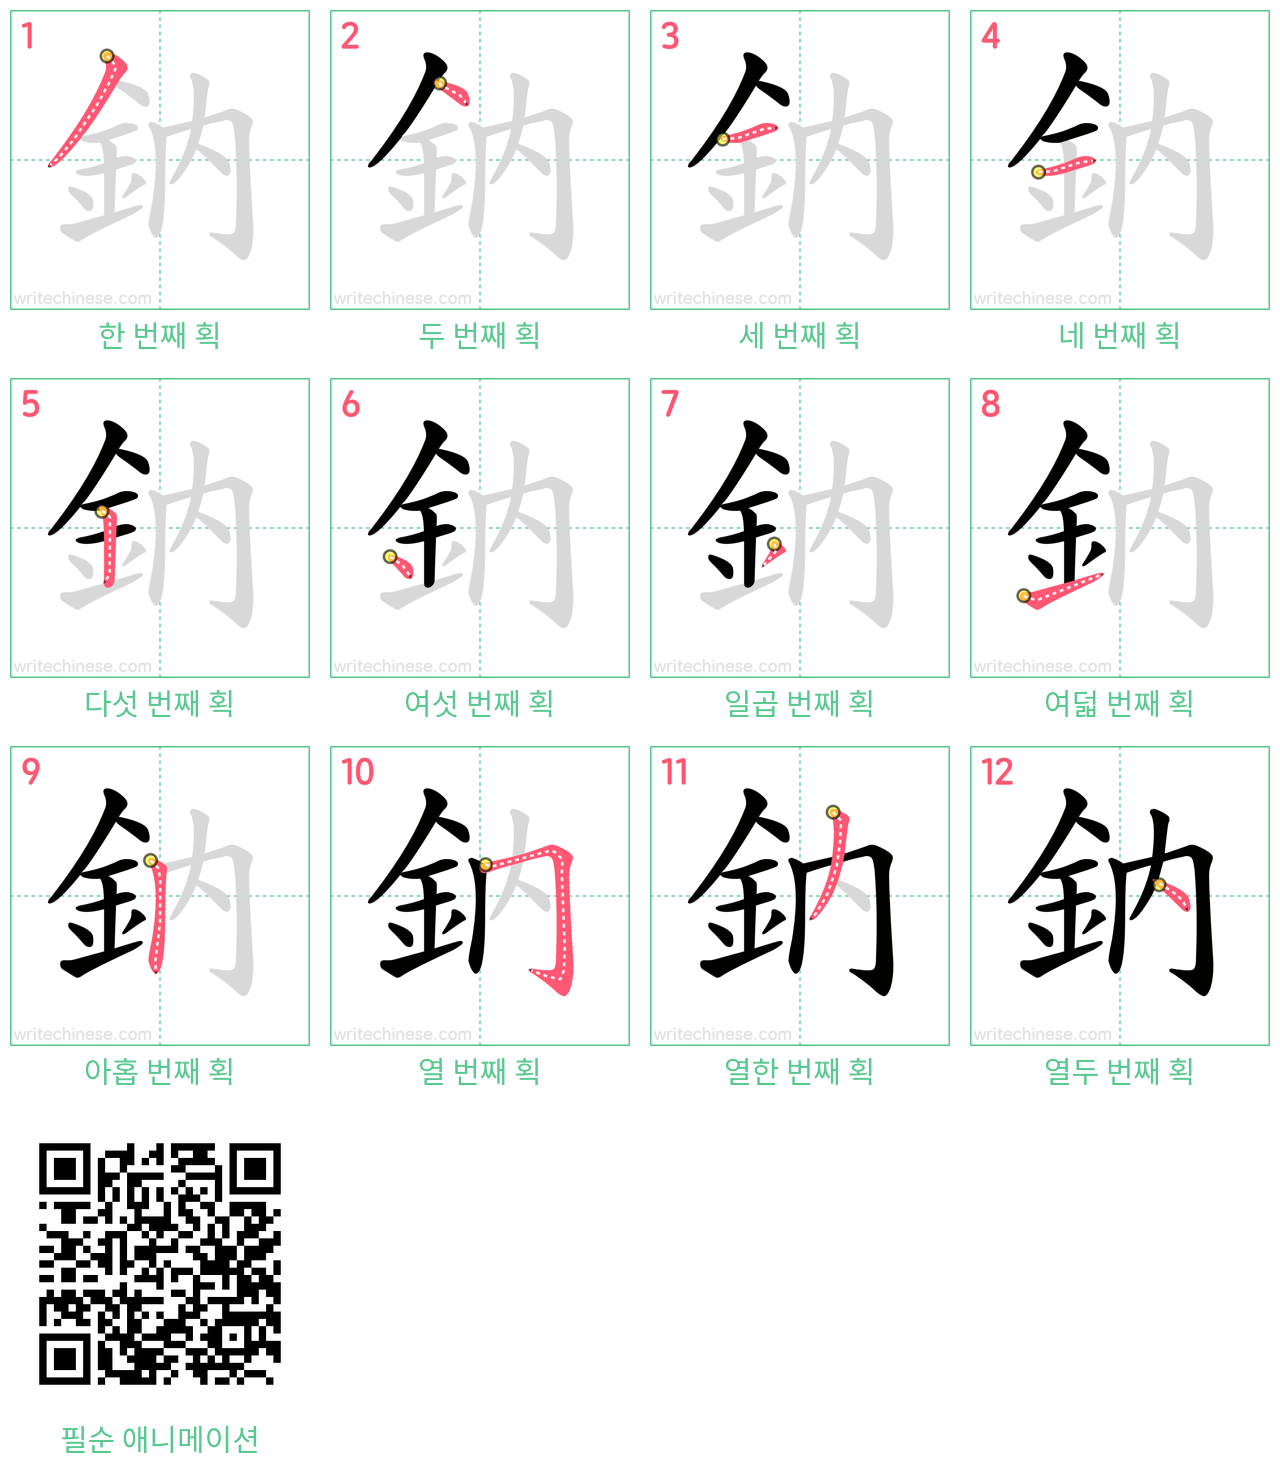 鈉 step-by-step stroke order diagrams